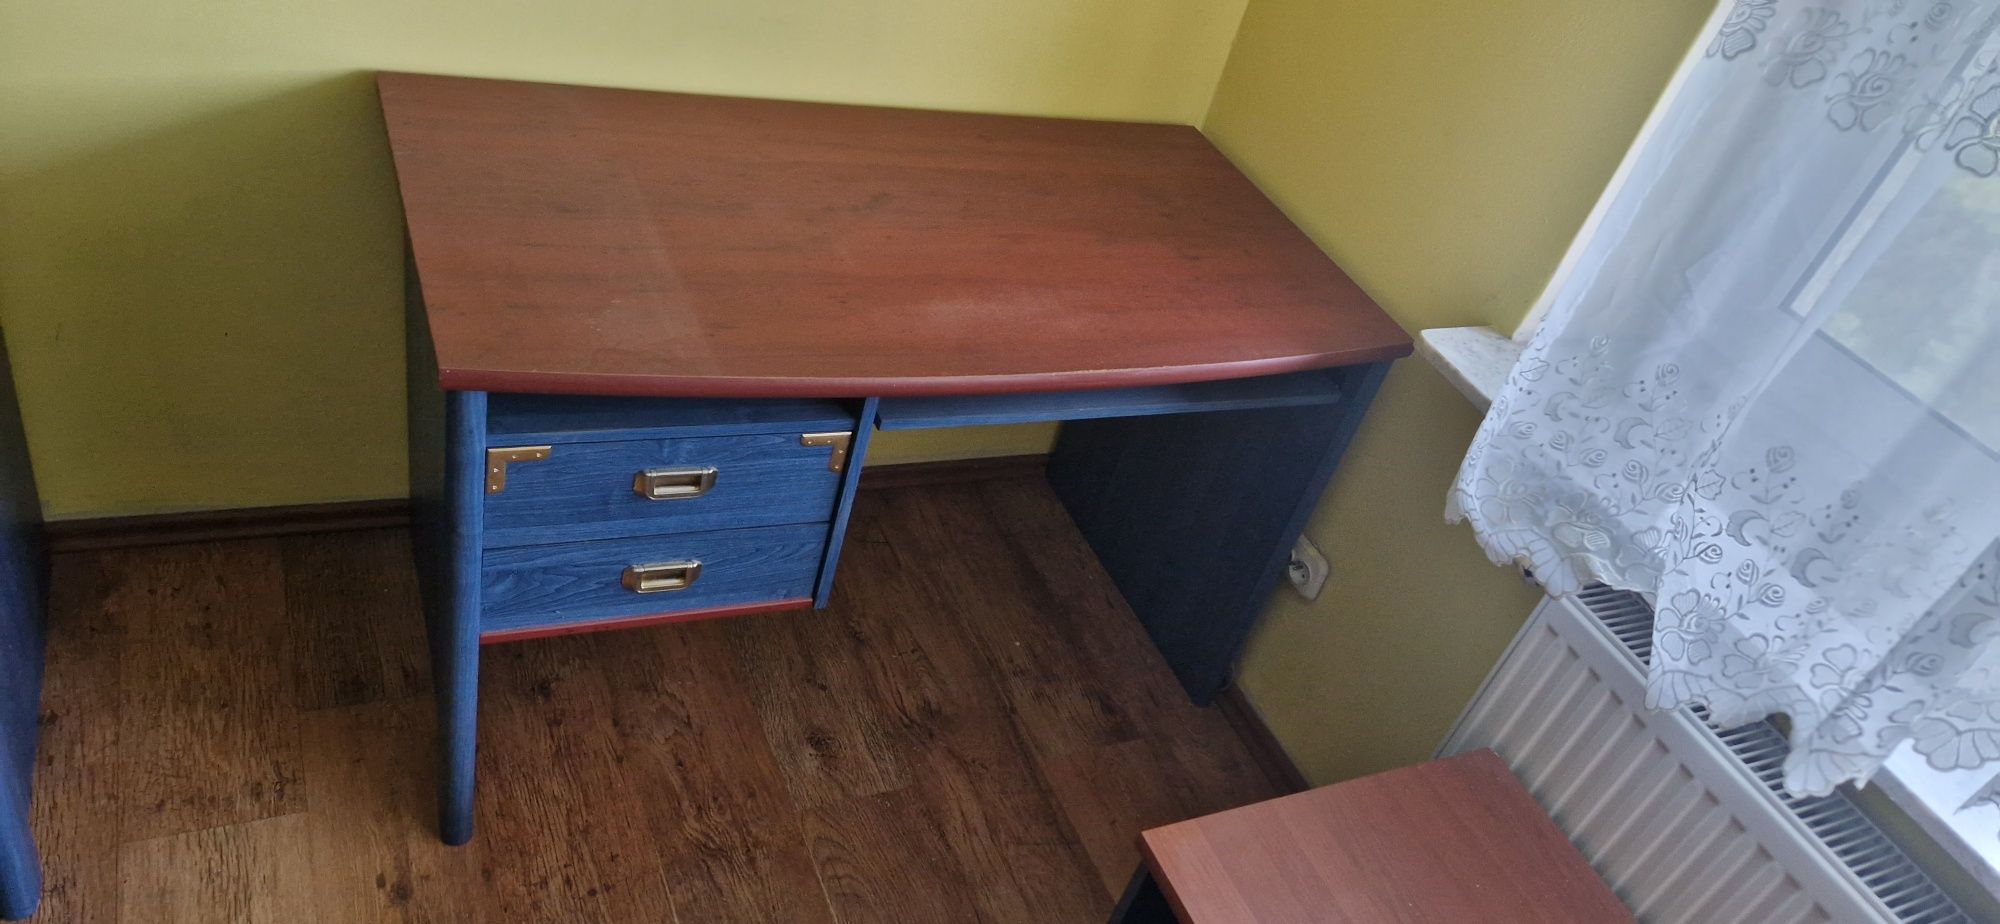 zestaw drewniany mebli VOX Magellan szafa biurko łóżko itp